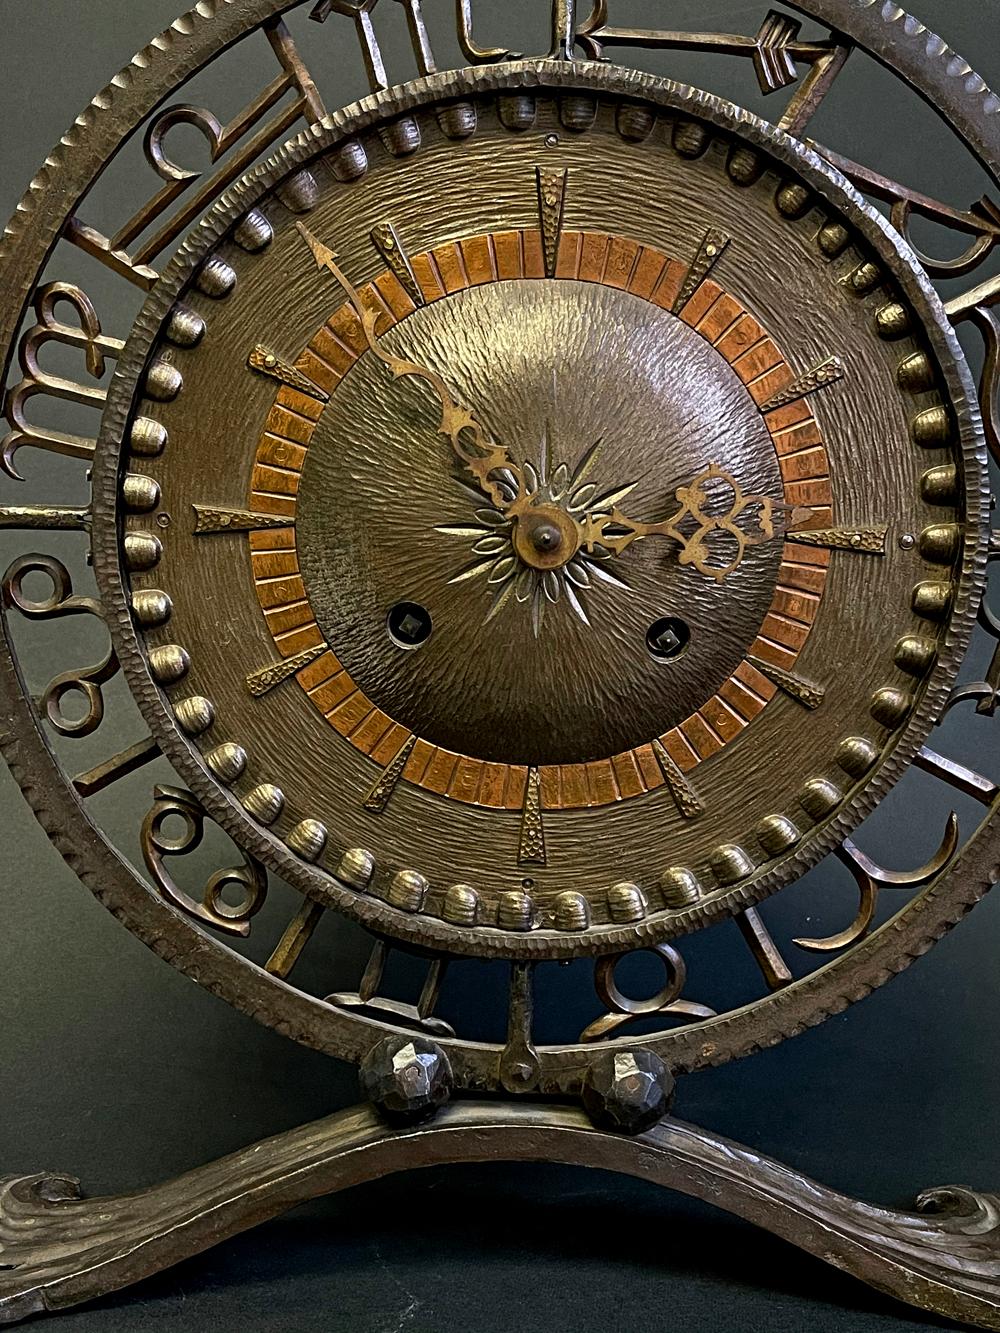 Cette grande horloge Art déco est composée de fer forgé et de cuivre, tous martelés et formés à la main. Le cadran central de l'horloge est entouré d'un travail ajouré représentant les symboles de chacun des signes du Zodiac. L'artisanat est